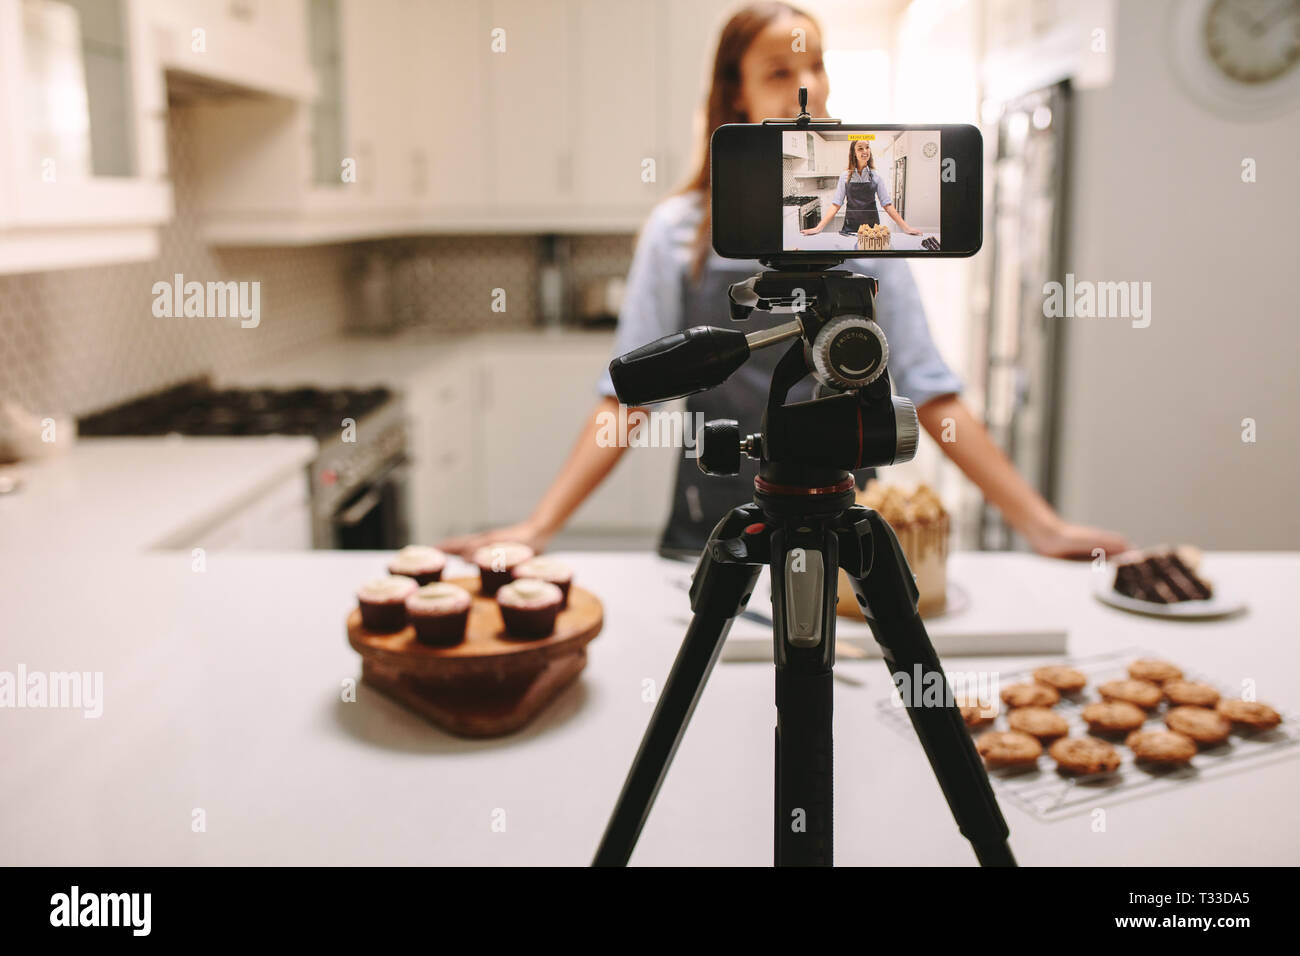 Jeune femme blogger l'enregistrement de vidéo sur téléphone mobile appareil photo en cuisine. L'enregistrement vidéo tutoriel blogger femelle session de la leçon à la maison kitch Banque D'Images